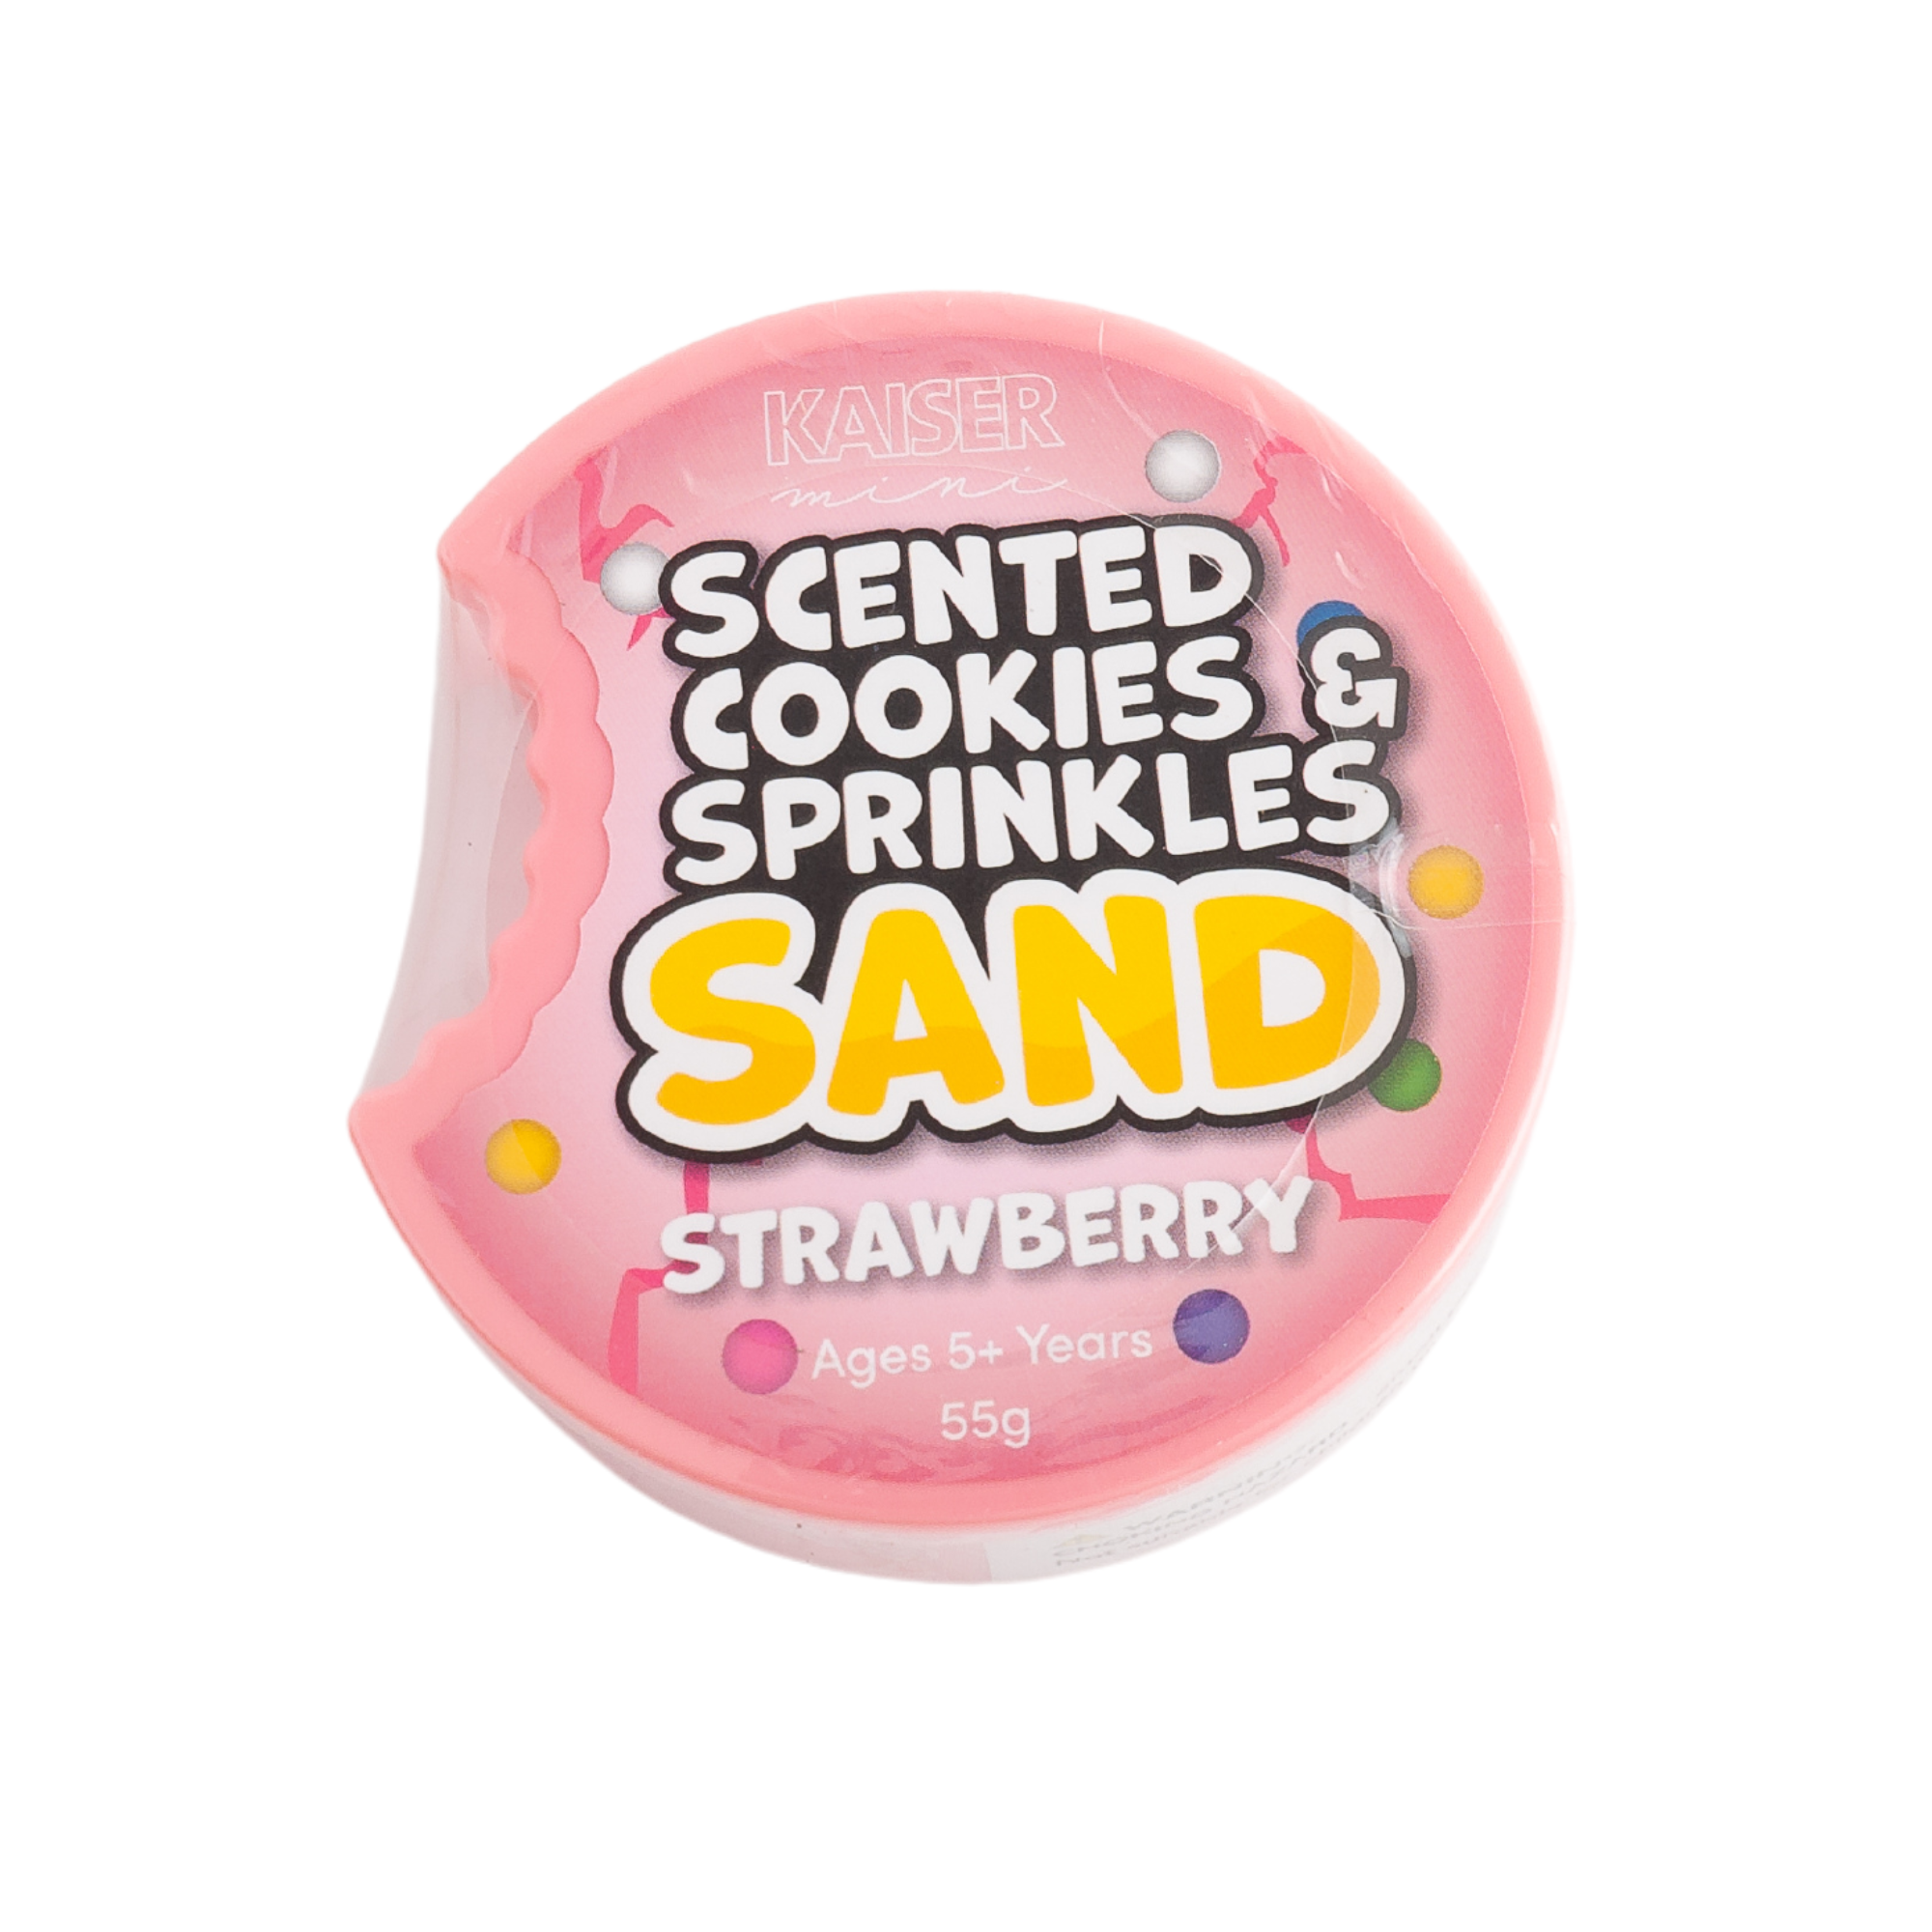 Cookies & Sprinkles Sand - Strawberry